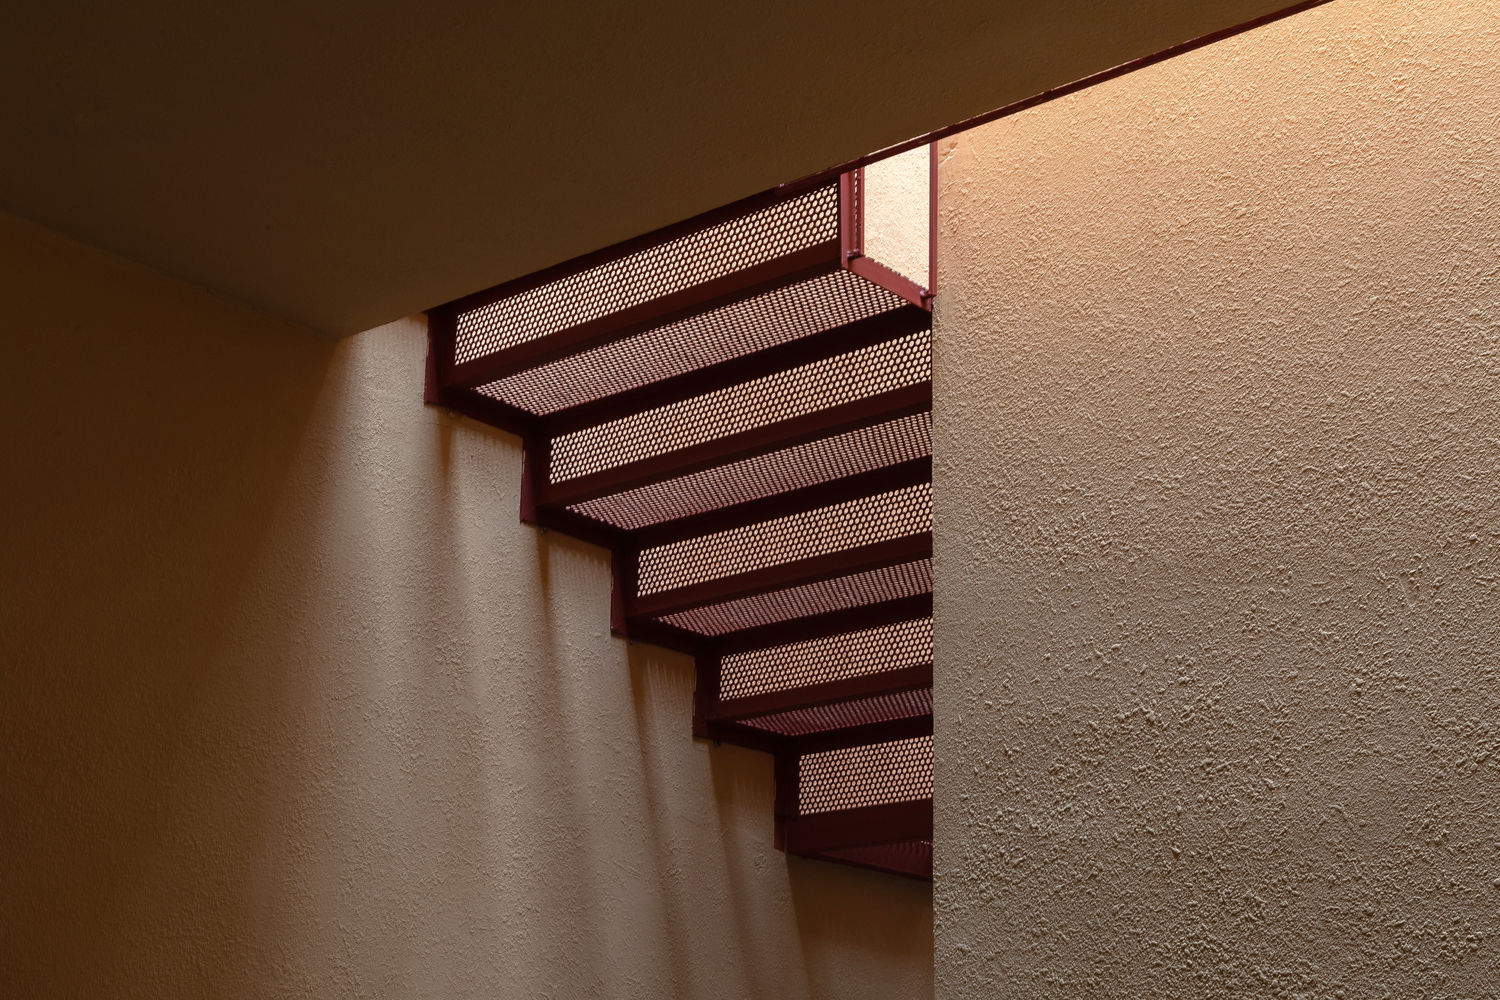 Cầu thang với lan lan và những bậc tam cấp đỏ thiết kế dạng lưới kim loại cho phép ánh sáng xuyên suốt cầu thang từ tầng trên cao xuống đến không gian bên dưới, kết hợp với ánh nắng tạo nên những khoảng không đầy tính nghệ thuật.